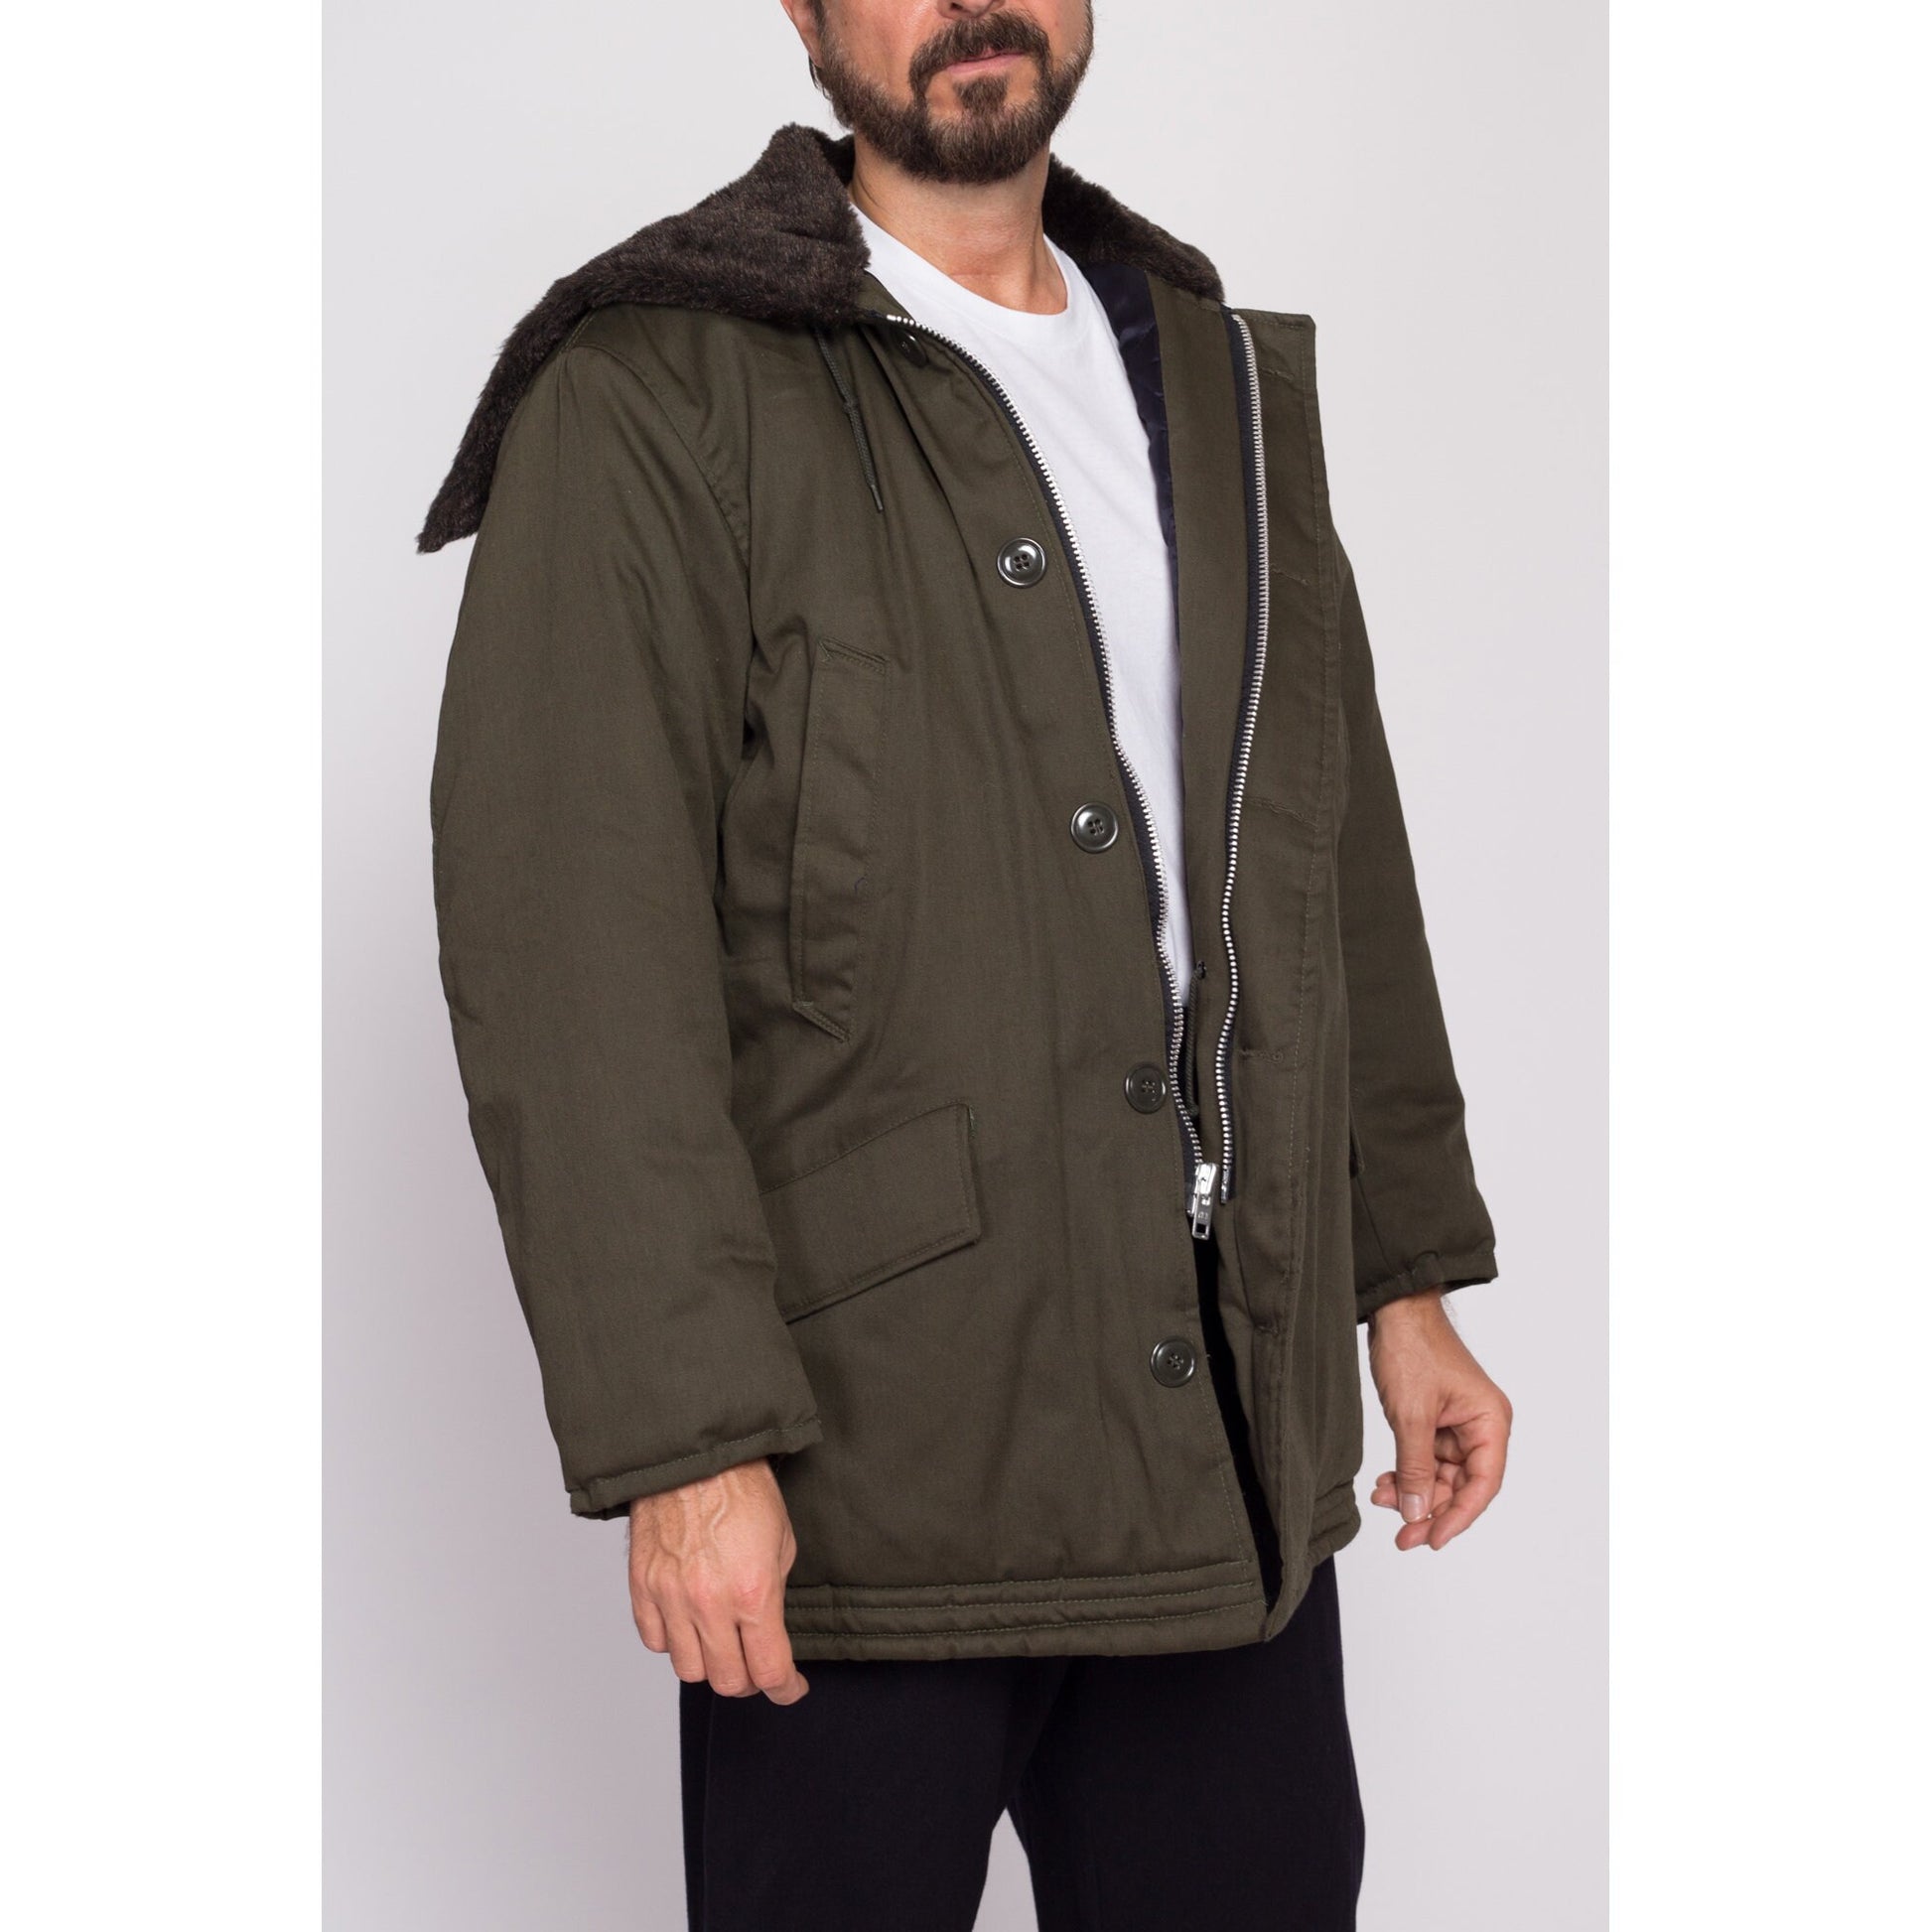 M| 80s Golden Fleece Hooded Army Green Parka Jacket - Men's Medium Short | Vintage Industrial Outerwear Split Zip Hood Oversize Coat